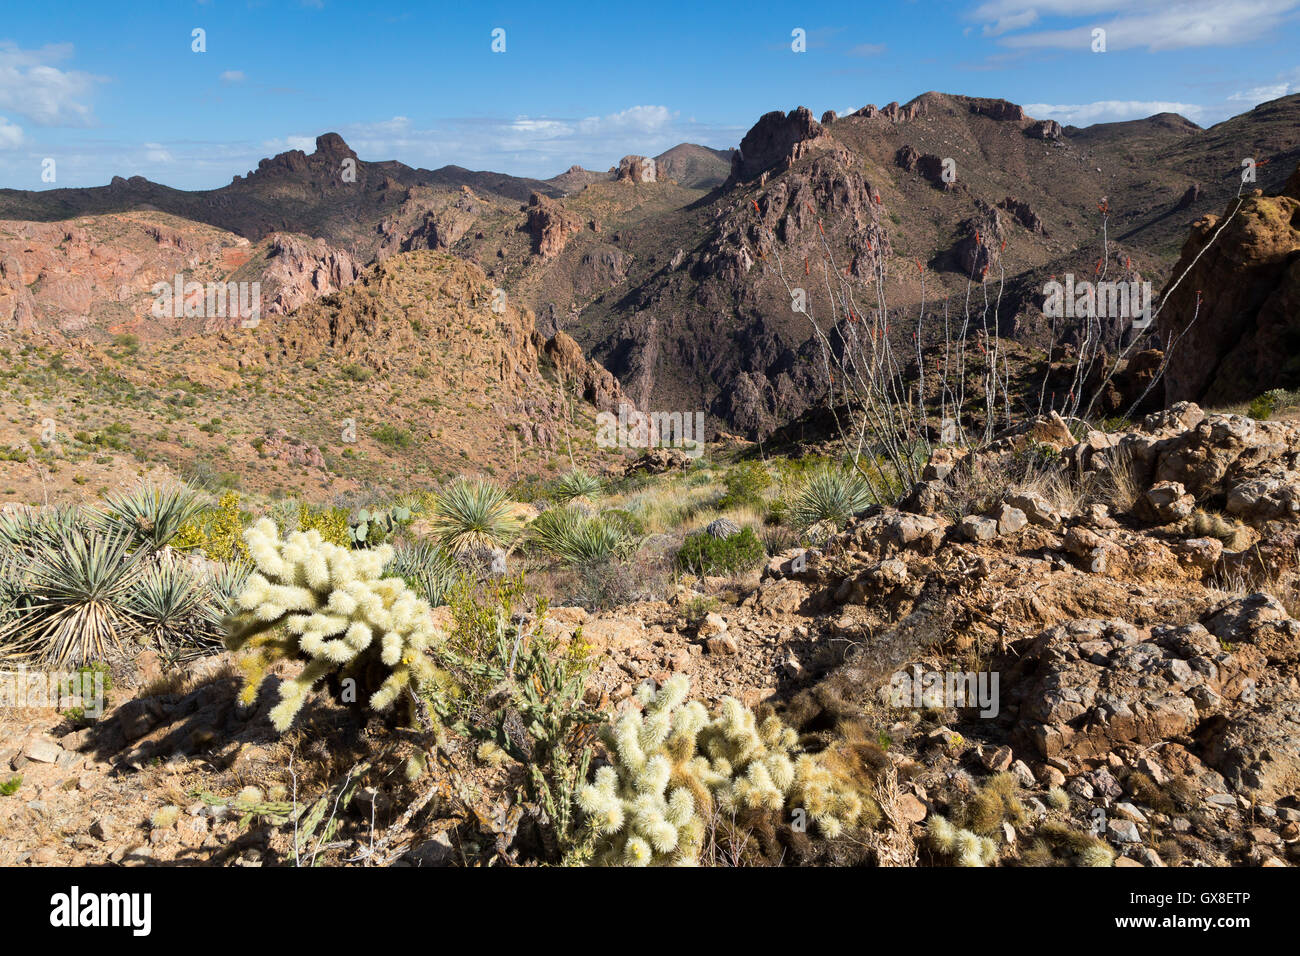 De plus en plus avec la floraison du yucca angustifolié cholla cactus et plantes au-dessus d'un canyon rocheux. Gila River Canyons, Arizona Banque D'Images